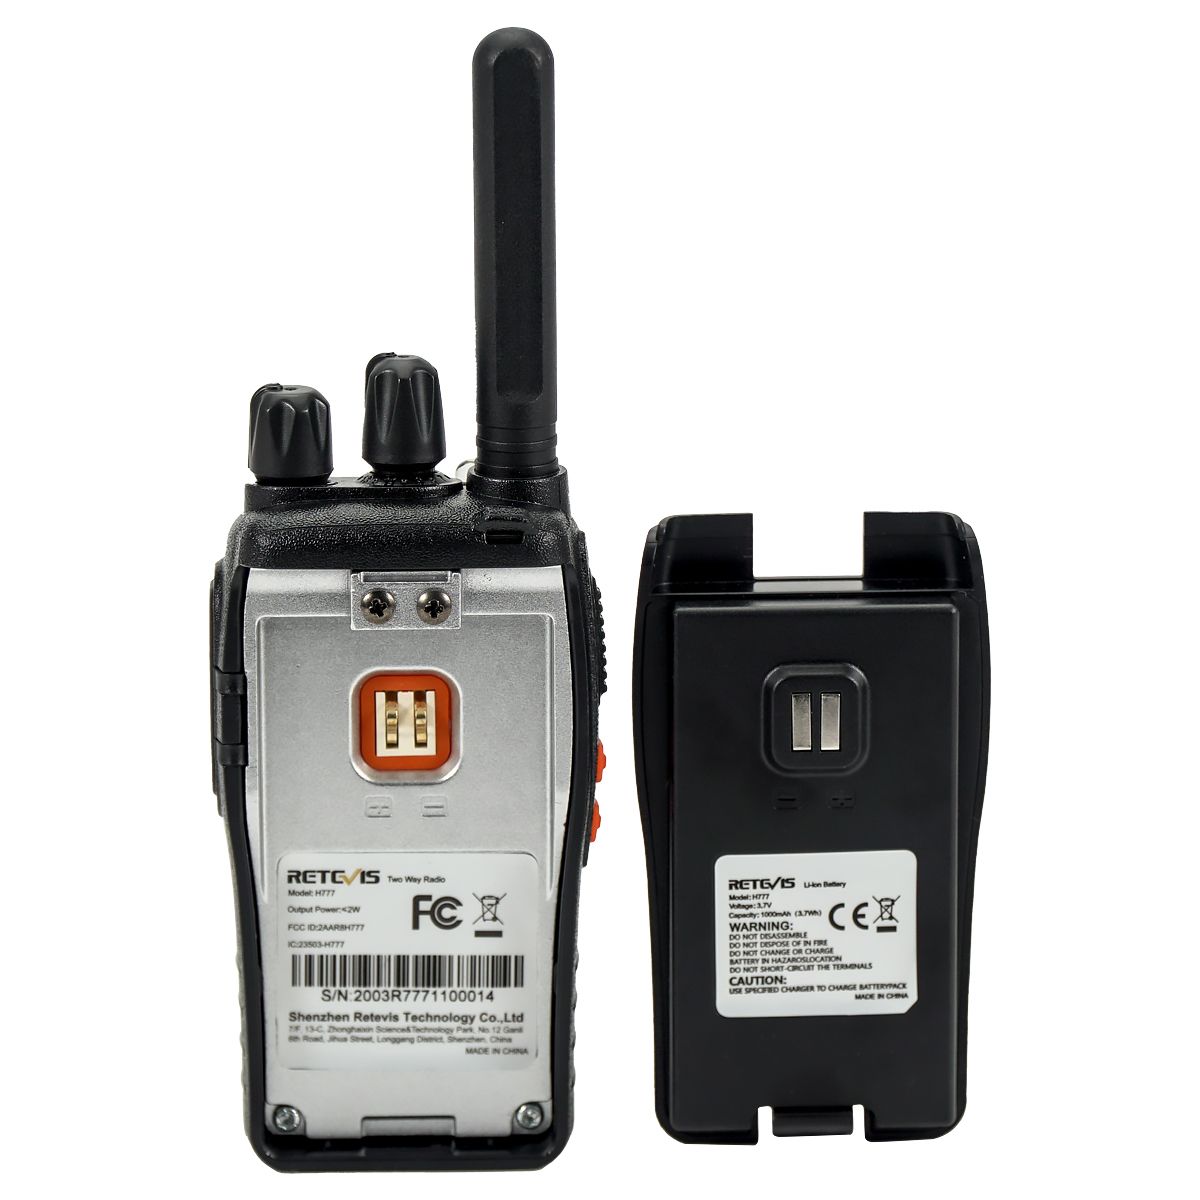 Retevis-H777-Walkie-Talkie-Retevis-16CH-UHF-400-470MHz-Ham-Radio-HF-Transceiver-2-Way-Radio-1212755